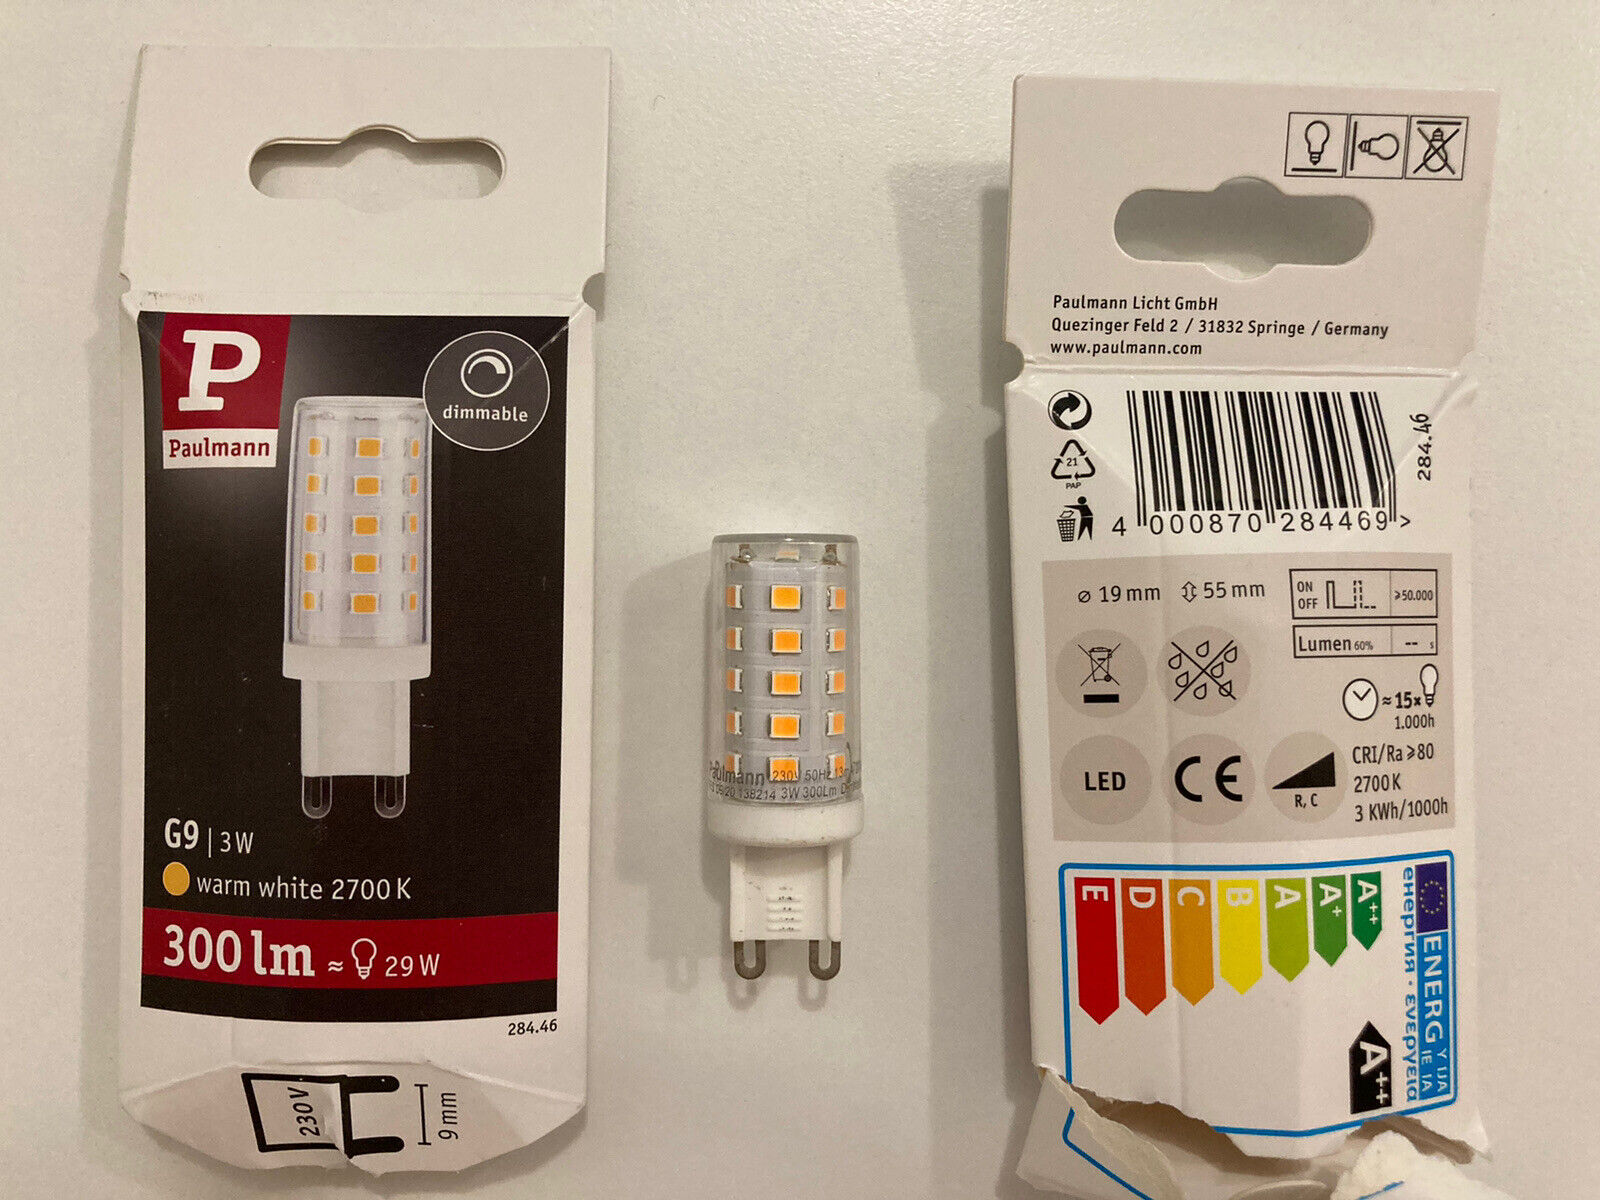 Paulmann LED - 3 Watt - Pin Socket G9 - warm white 2700K - dimmable | eBay | Wandleuchten